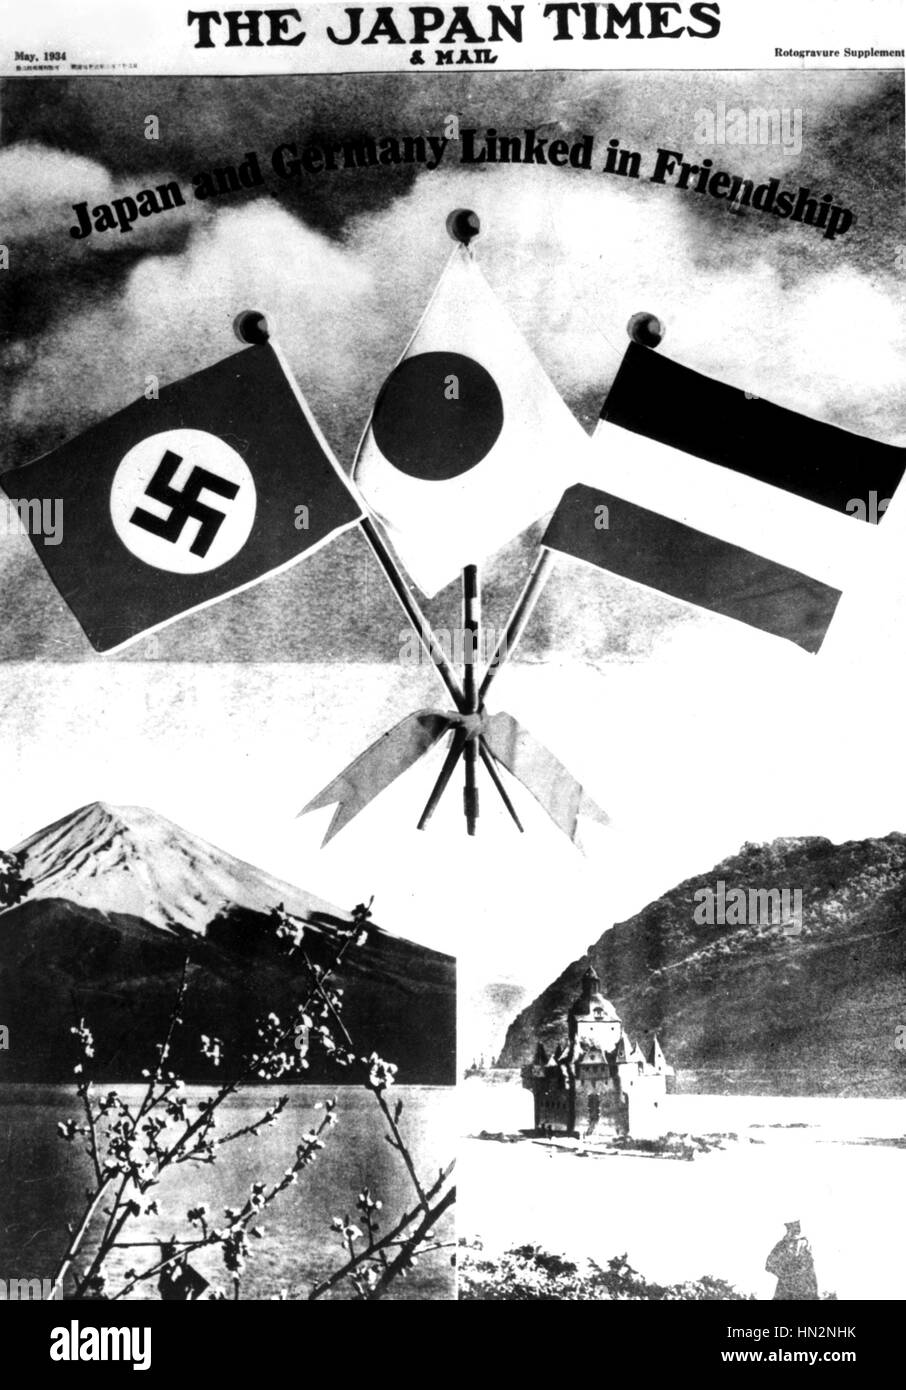 L'influence allemande au Japon : le plus célèbre journal japonais en anglais est la "Japan Times" ; dans un numéro spécial, la première page de l'annonce : "Le Japon et l'Allemagne unie dans l'amitié". Le Fujiyama et le Rhin s'affichent côte à côte. Mai 1934 Japon National a Banque D'Images